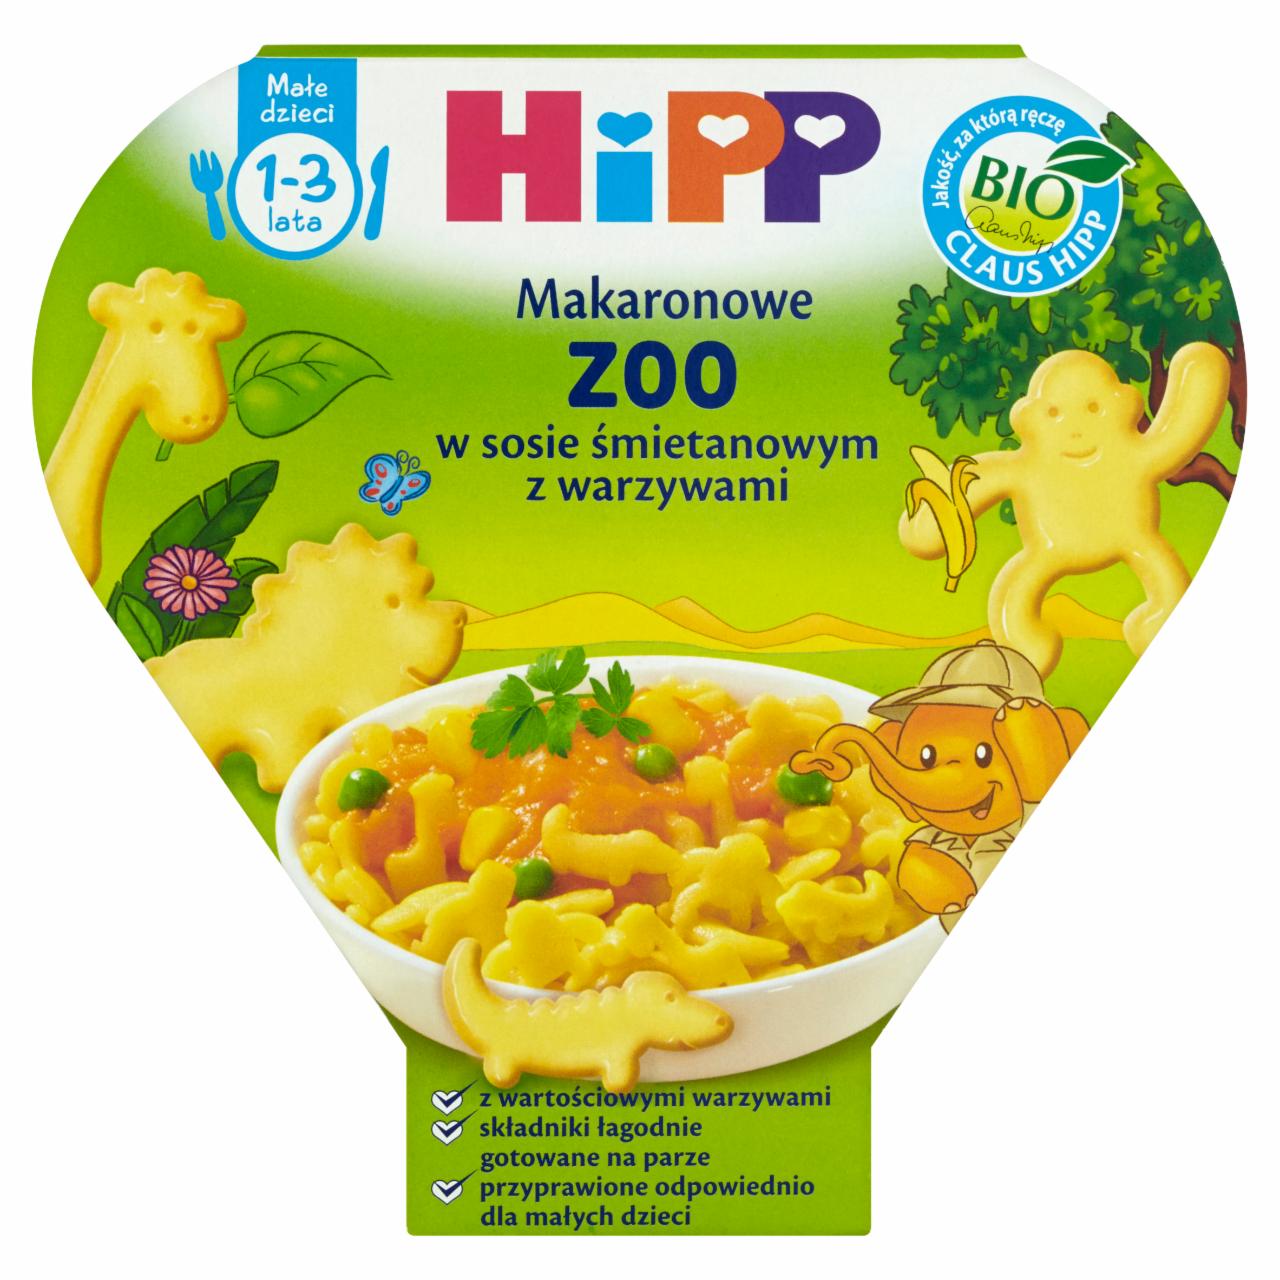 Zdjęcia - HiPP BIO Makaronowe ZOO w sosie śmietanowym z warzywami 1-3 lata 250 g